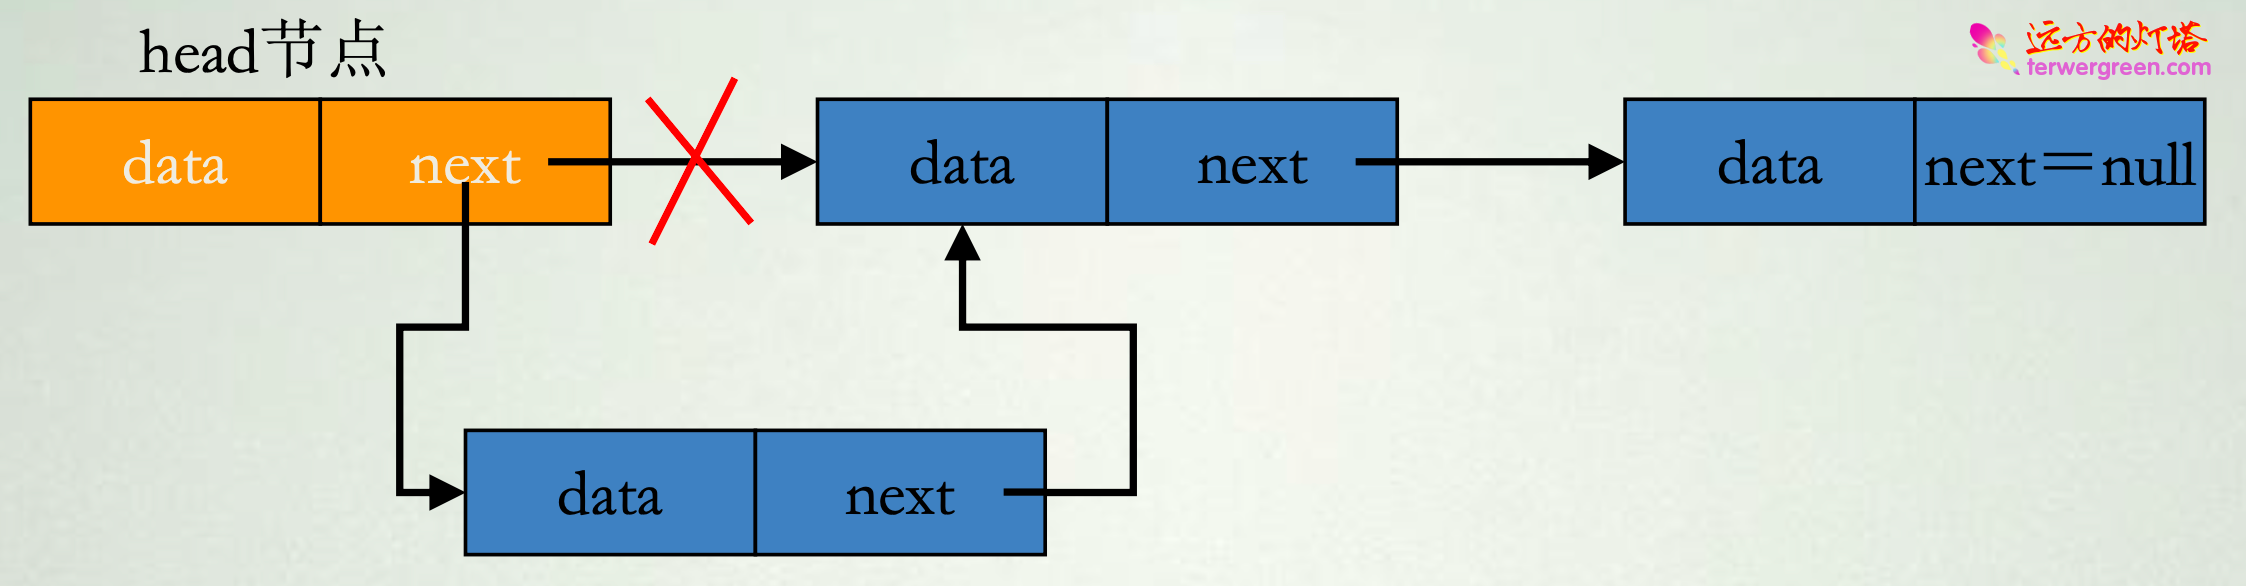 数据结构中的基本结构分析